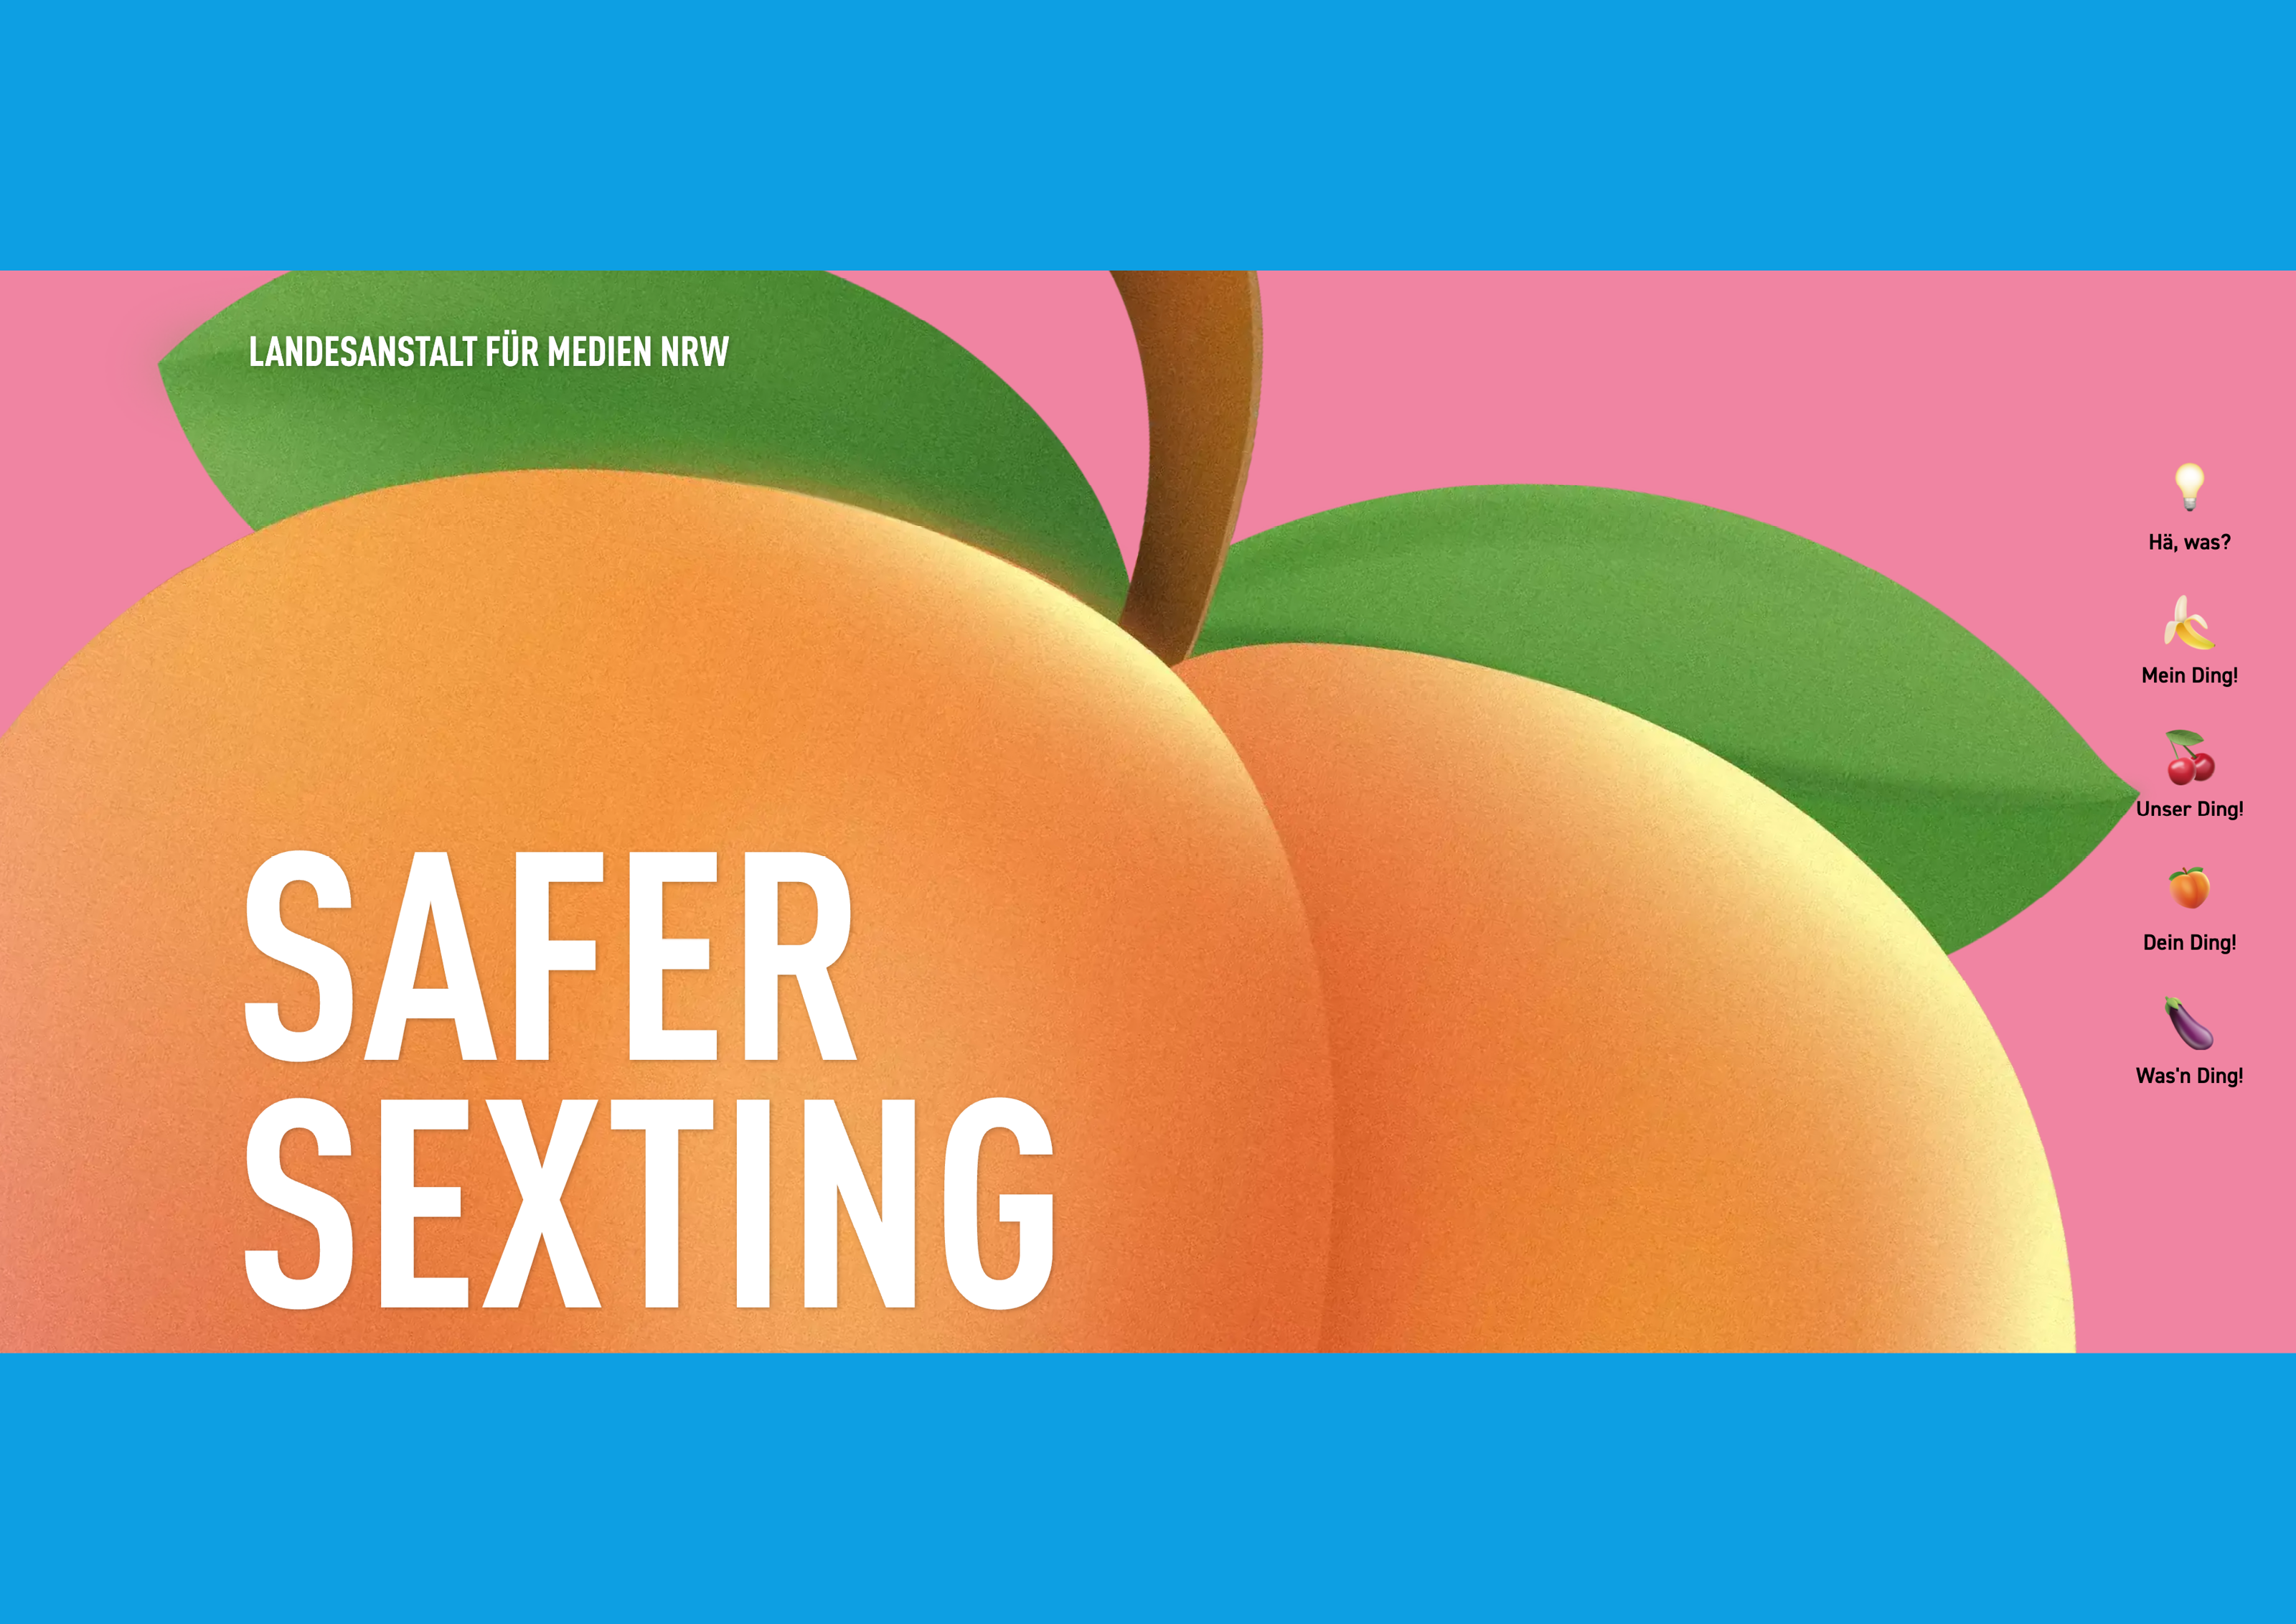 Bildauschnitt von der Startseite Safer Sexting